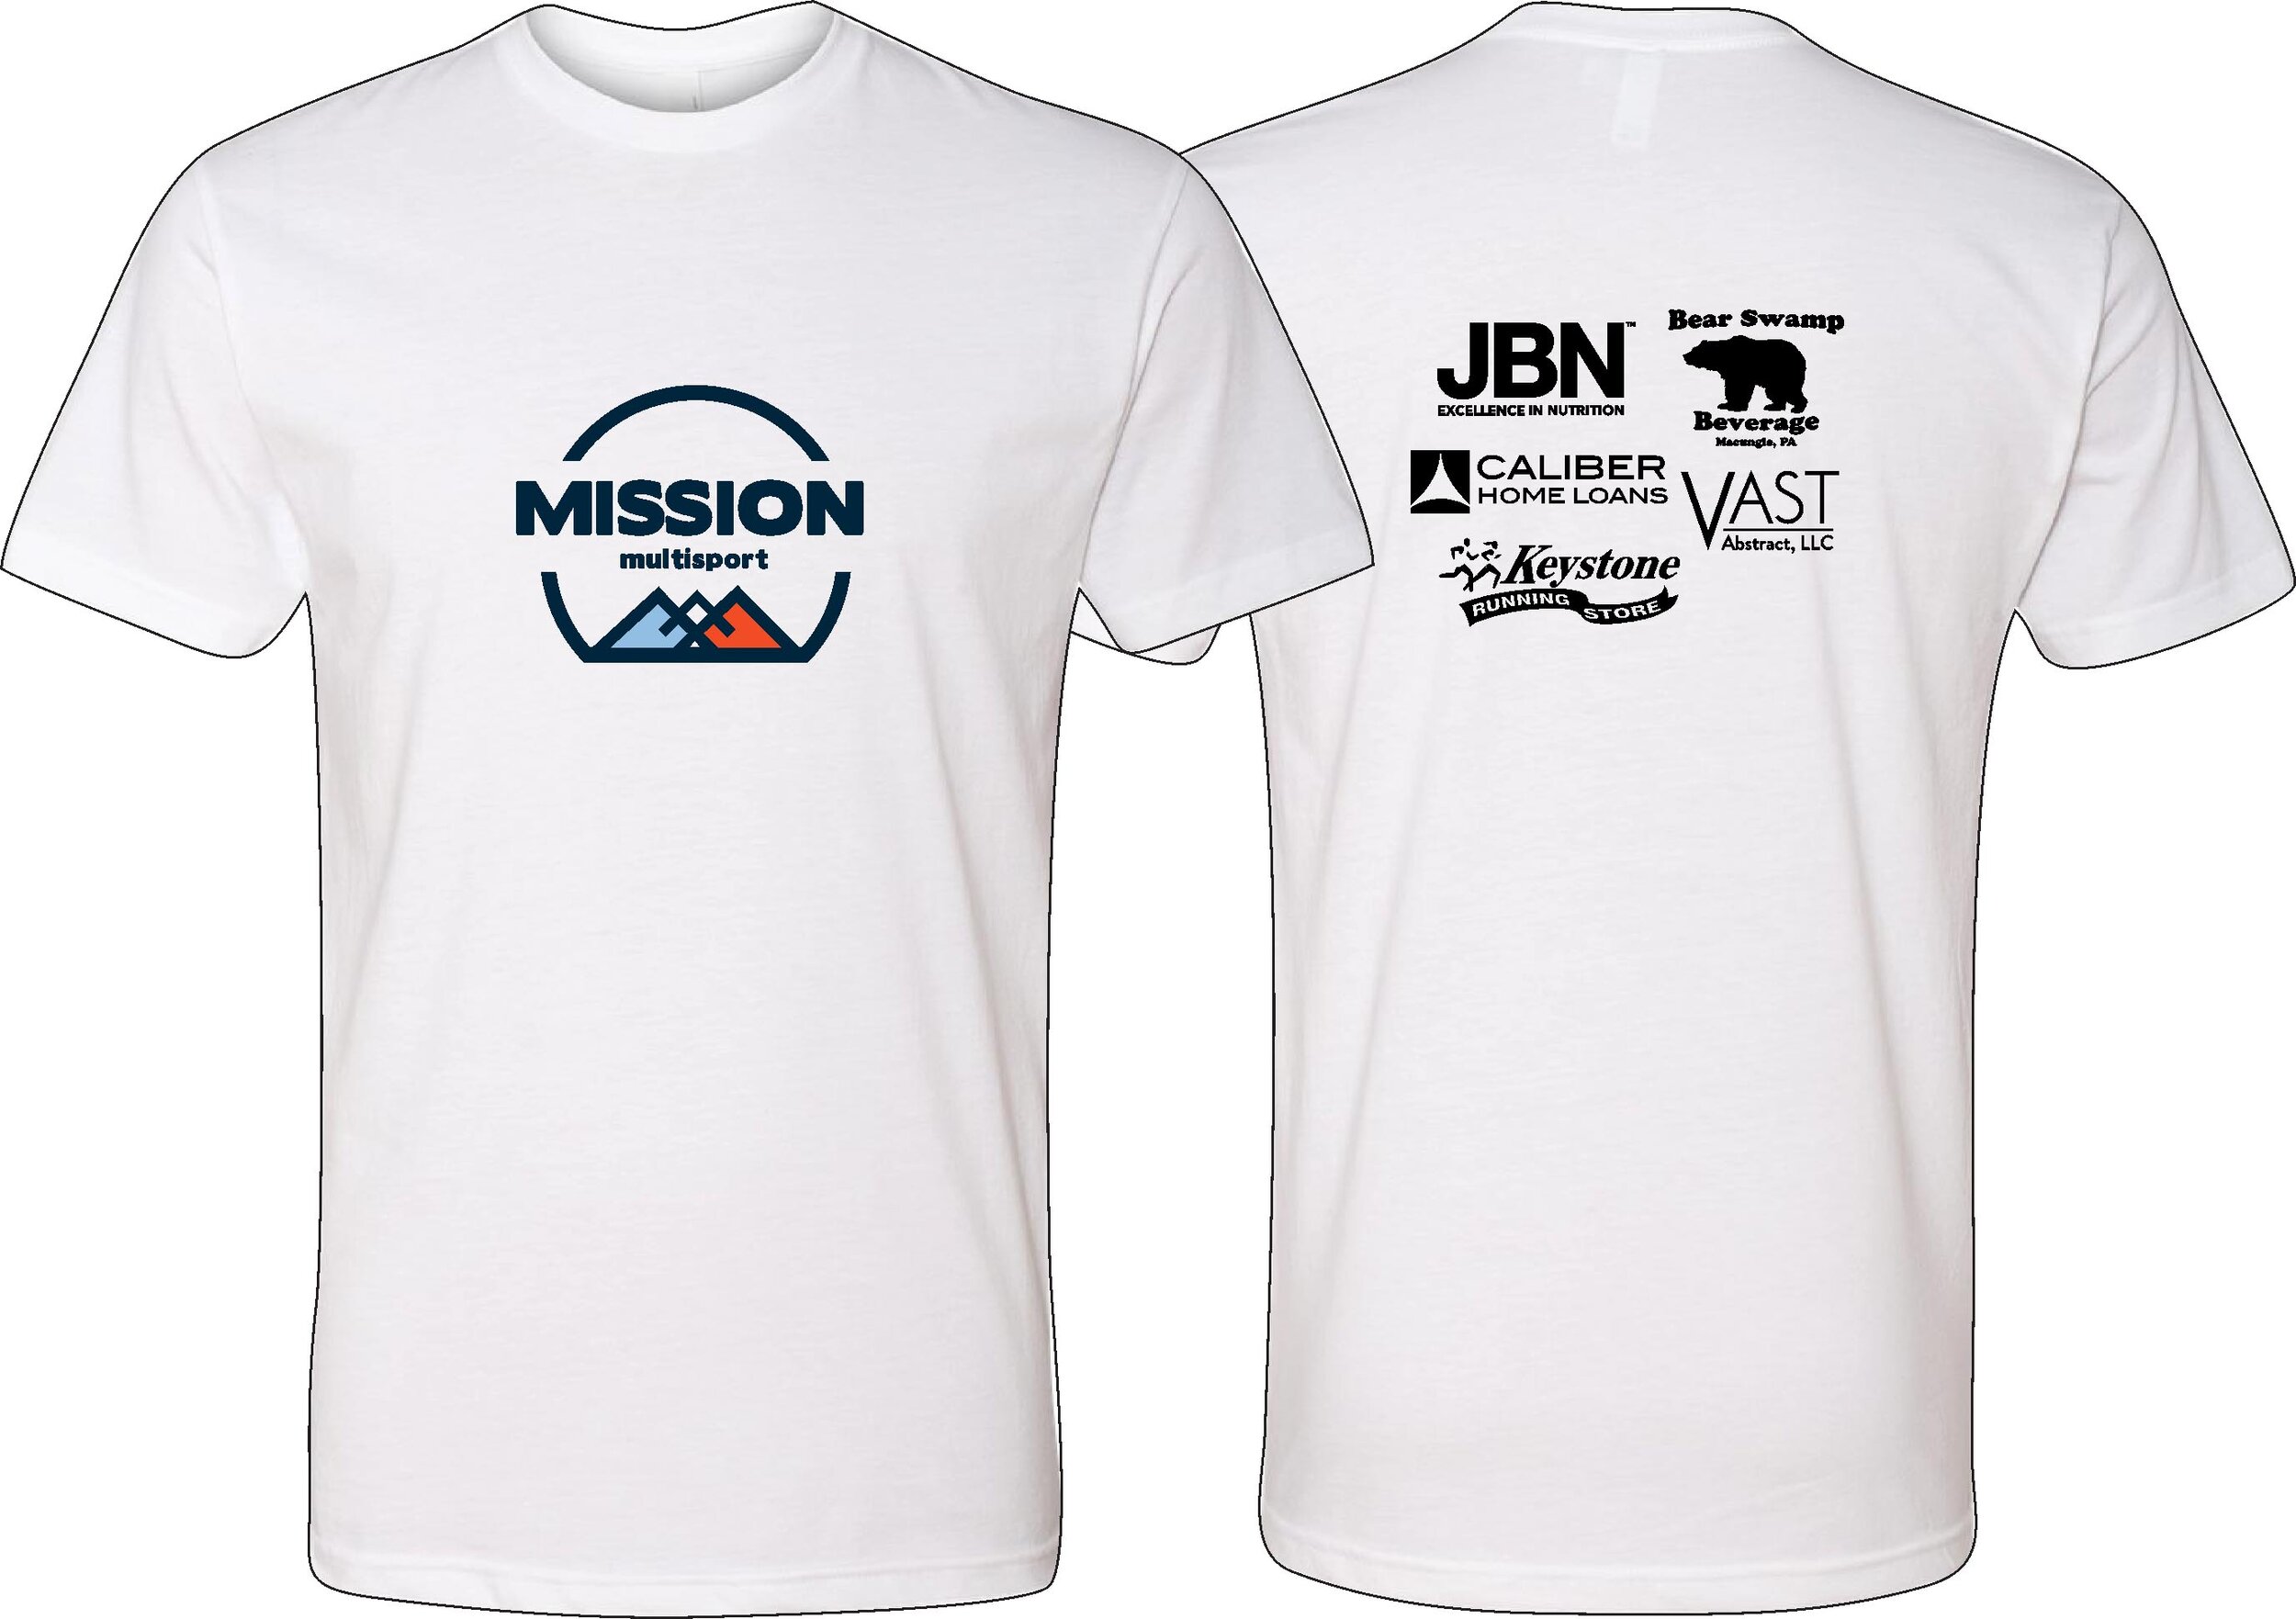 Mission Multisport Team Shirts — Mission Multisport Eastern Athletics